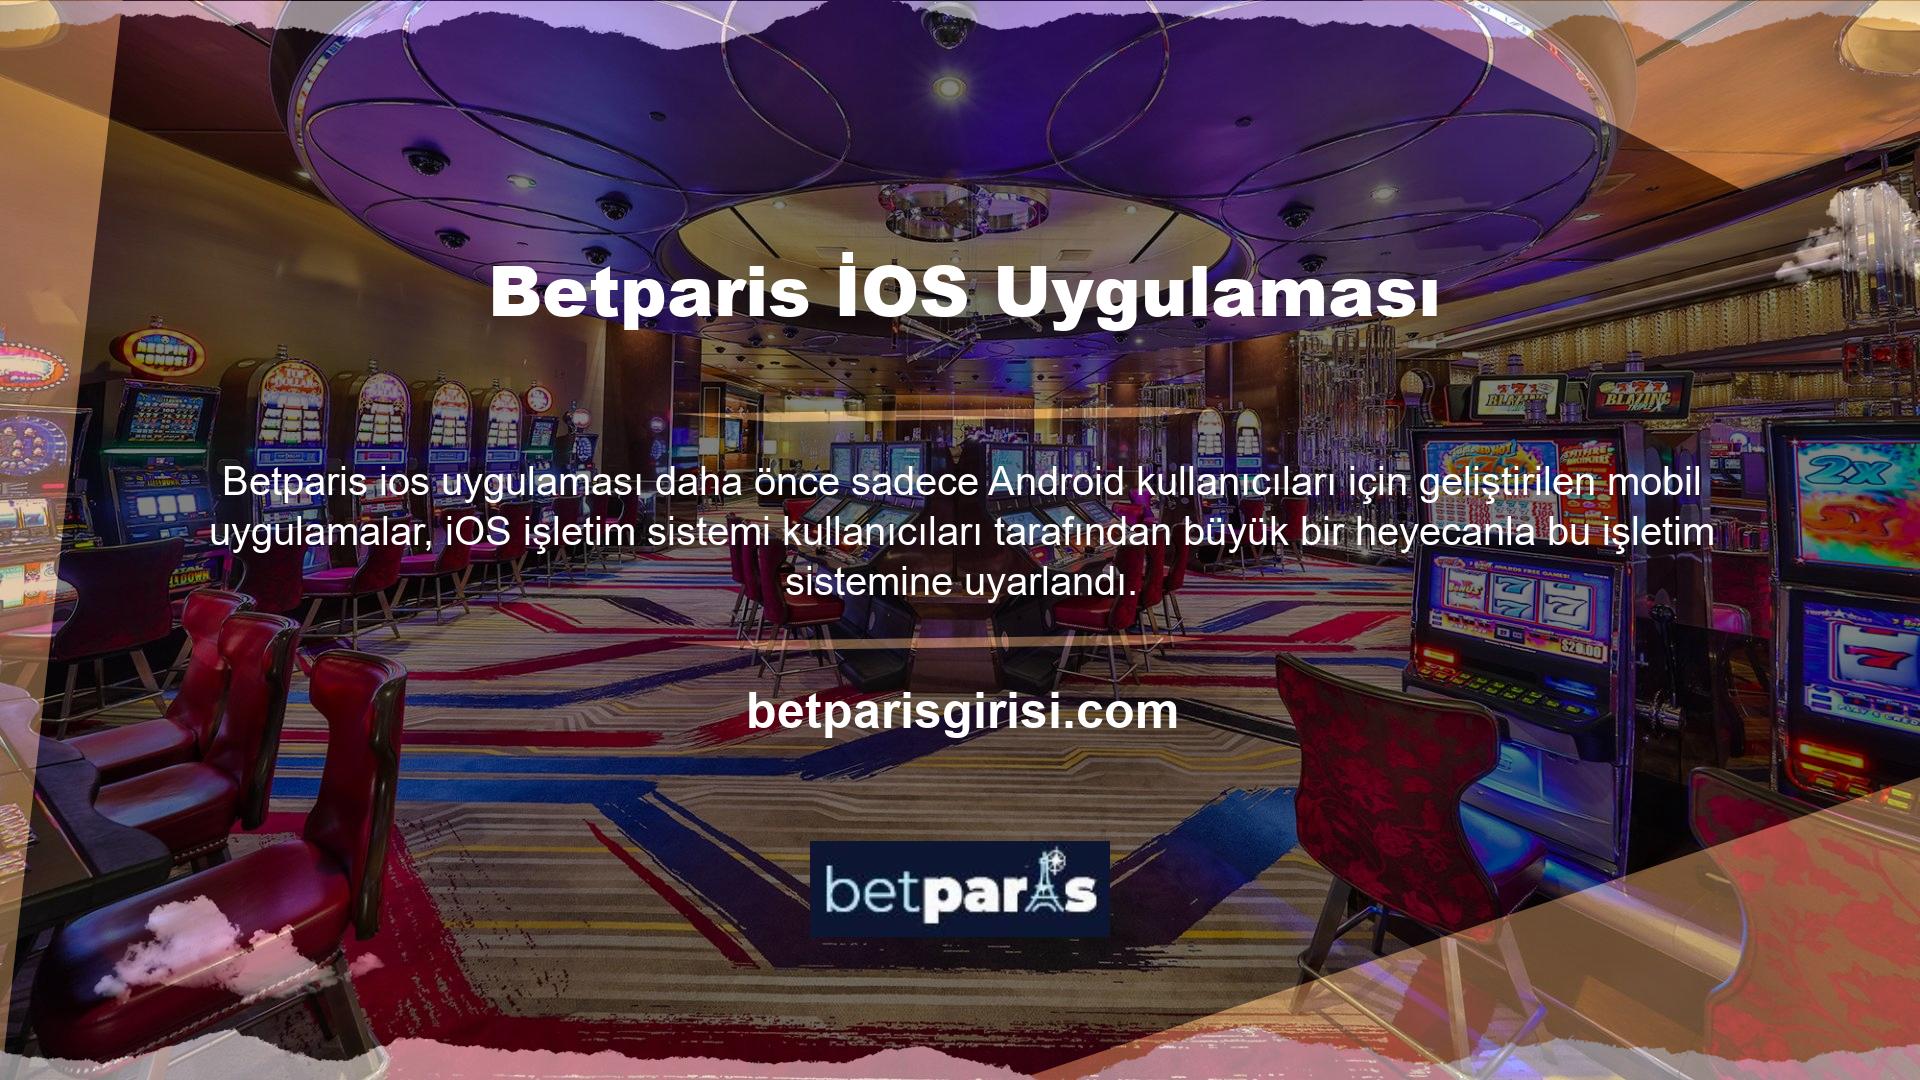 Site kullanıcılarının çoğunluğunun iOS kullanması nedeniyle Betparis mobil uygulama beklemiyordu ve bu işletim sistemine özel bir geliştirme sağladı